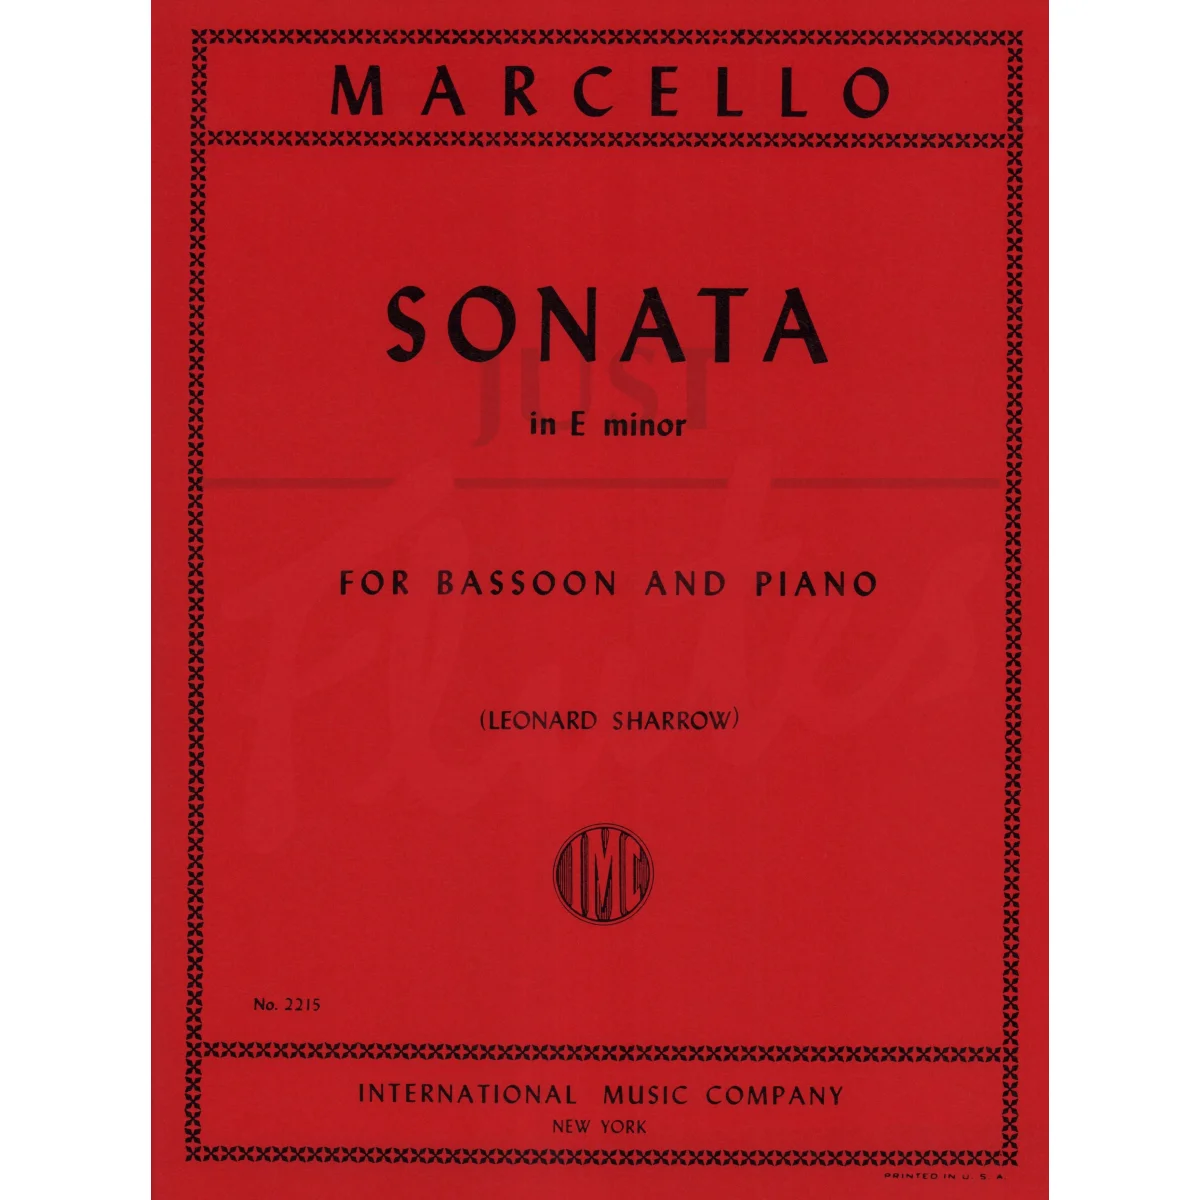 Sonata in E minor for Bassoon and Piano